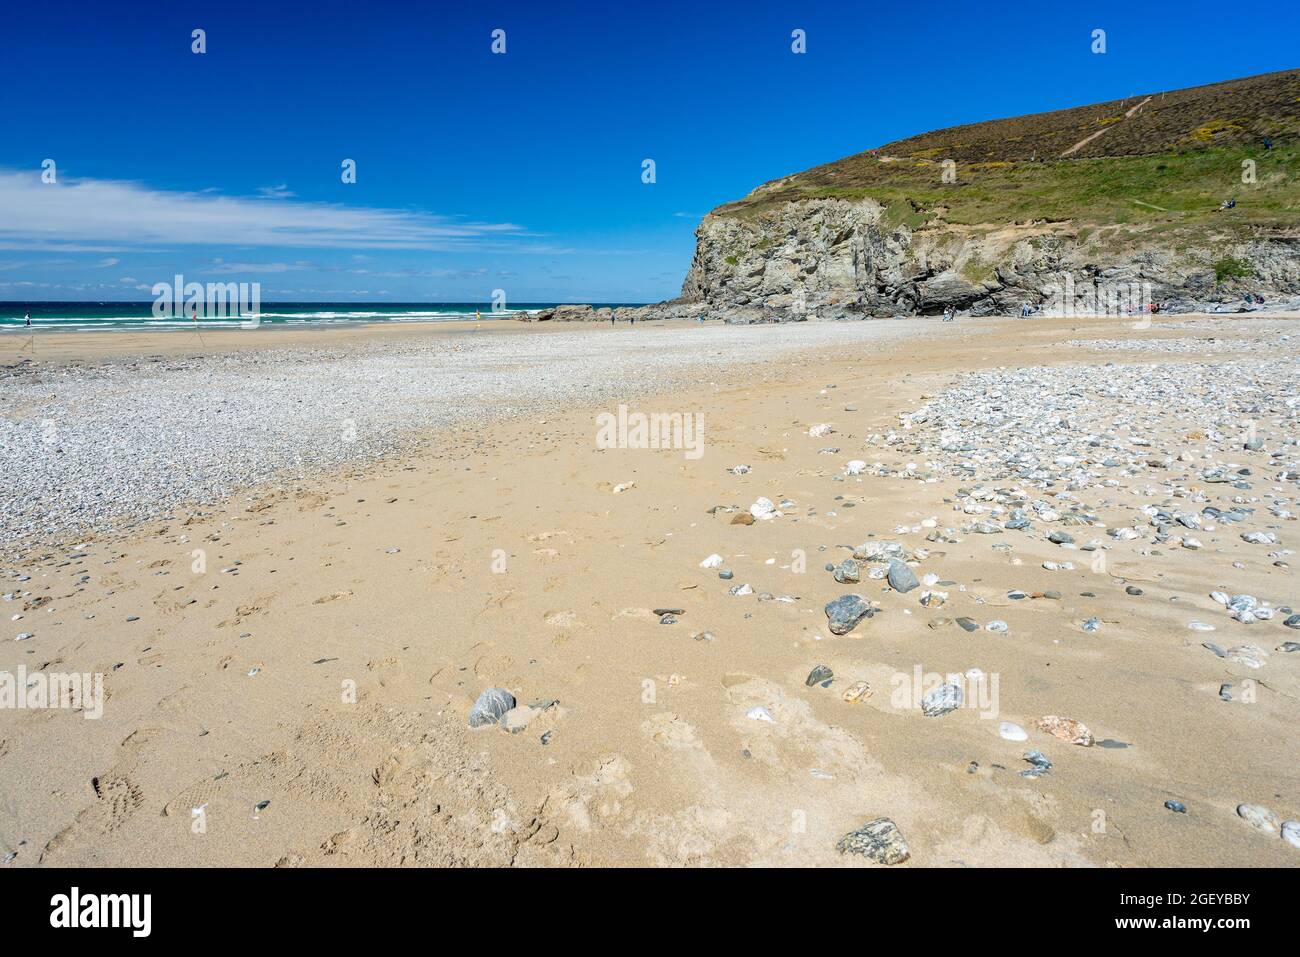 La belle plage de sable doré de Porthtowa Cornwall Angleterre Royaume-Uni Europe Banque D'Images